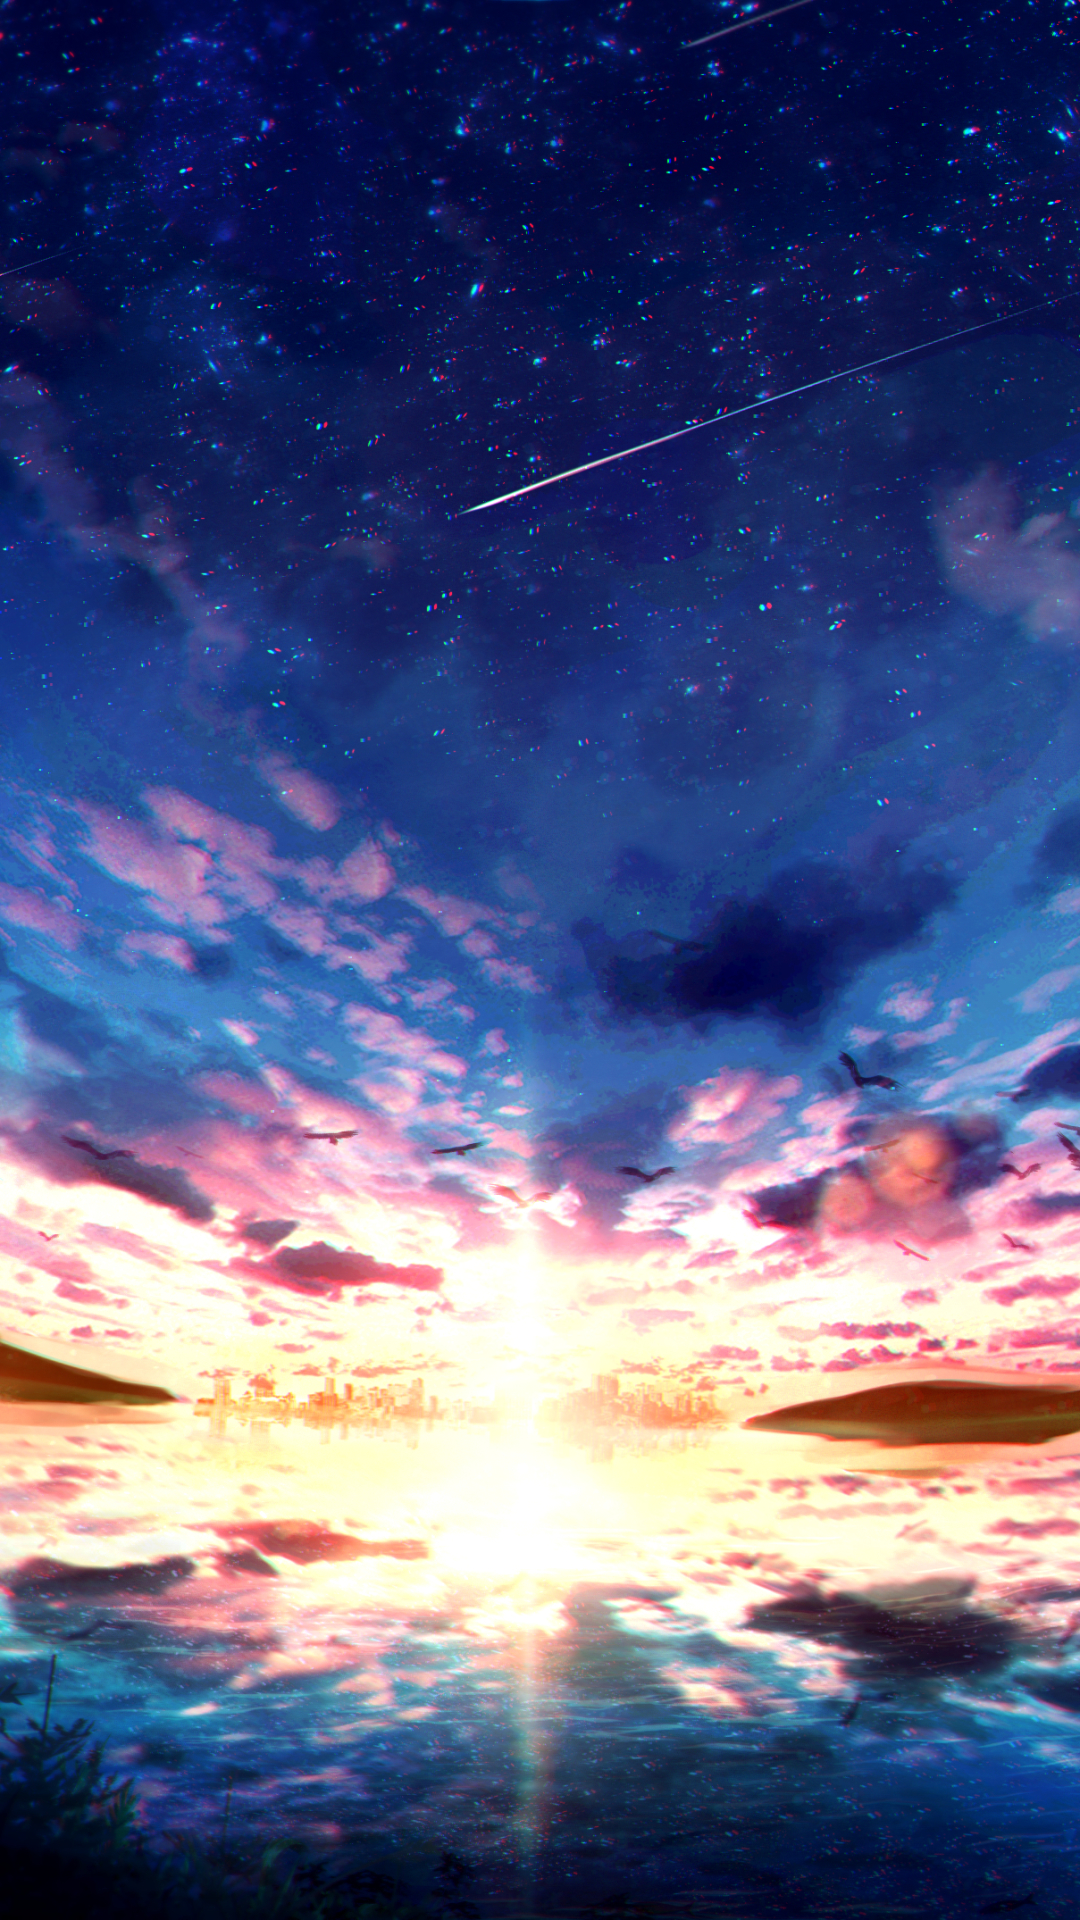 Hâm mộ Anime và muốn tìm kiếm một bức ảnh nền độc đáo cho điện thoại của bạn? Đừng bỏ qua bức ảnh Anime Sky Phone Wallpaper cực kì đáng yêu từ クメキ. Với màu sắc ấn tượng và hình nền mô tả cảnh vật đẹp, bức ảnh này sẽ khiến điện thoại của bạn trở nên độc đáo và thu hút hơn bao giờ hết.